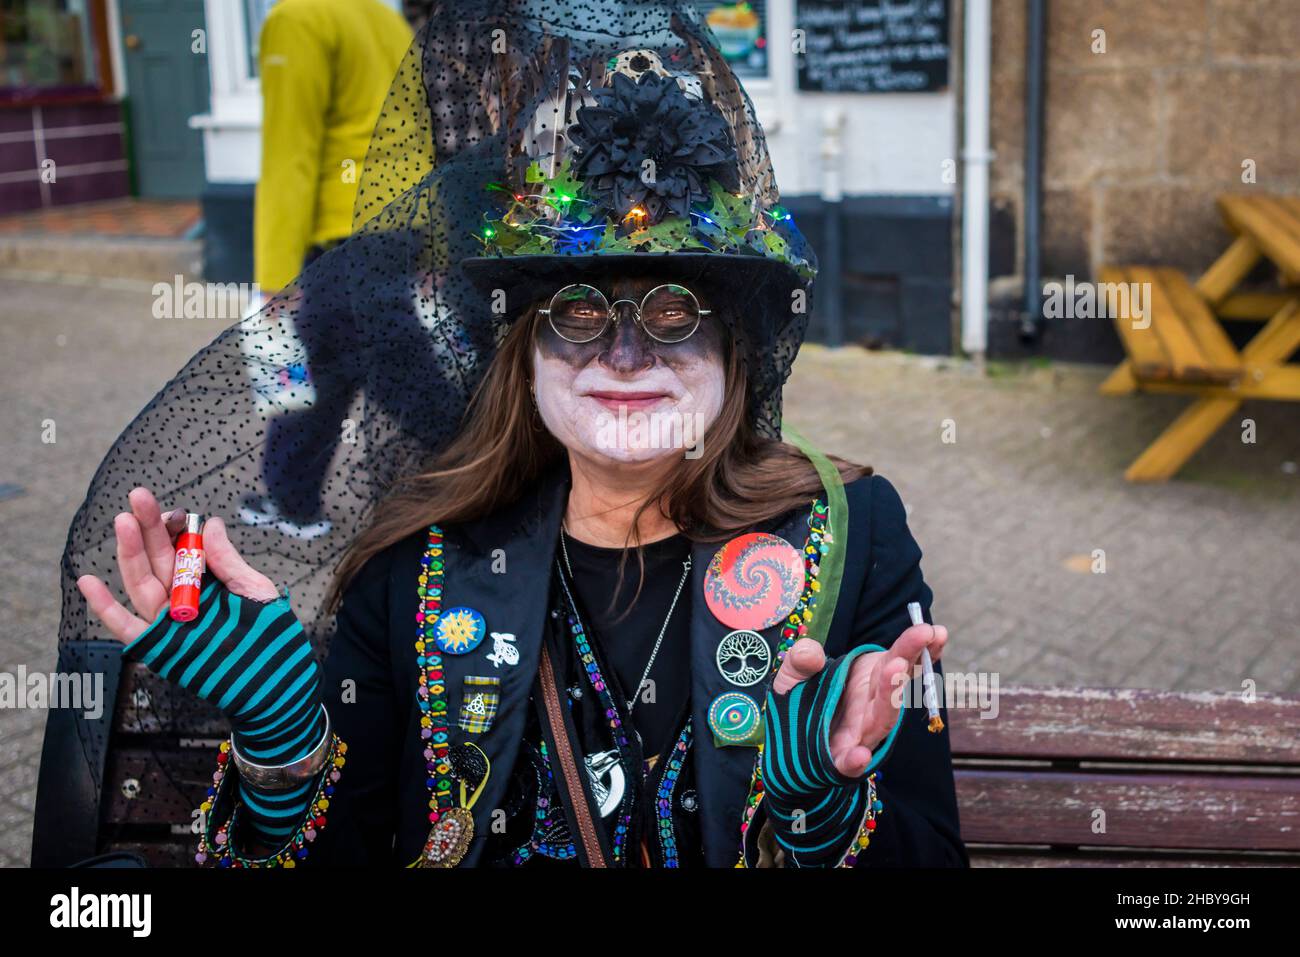 Ein glücklicher Teilnehmer am Montol Festival in Penzance in Cornwall. Das Festival ist eine Wiederbelebung oder Neuinterpretation vieler der traditionellen kornischen m Stockfoto